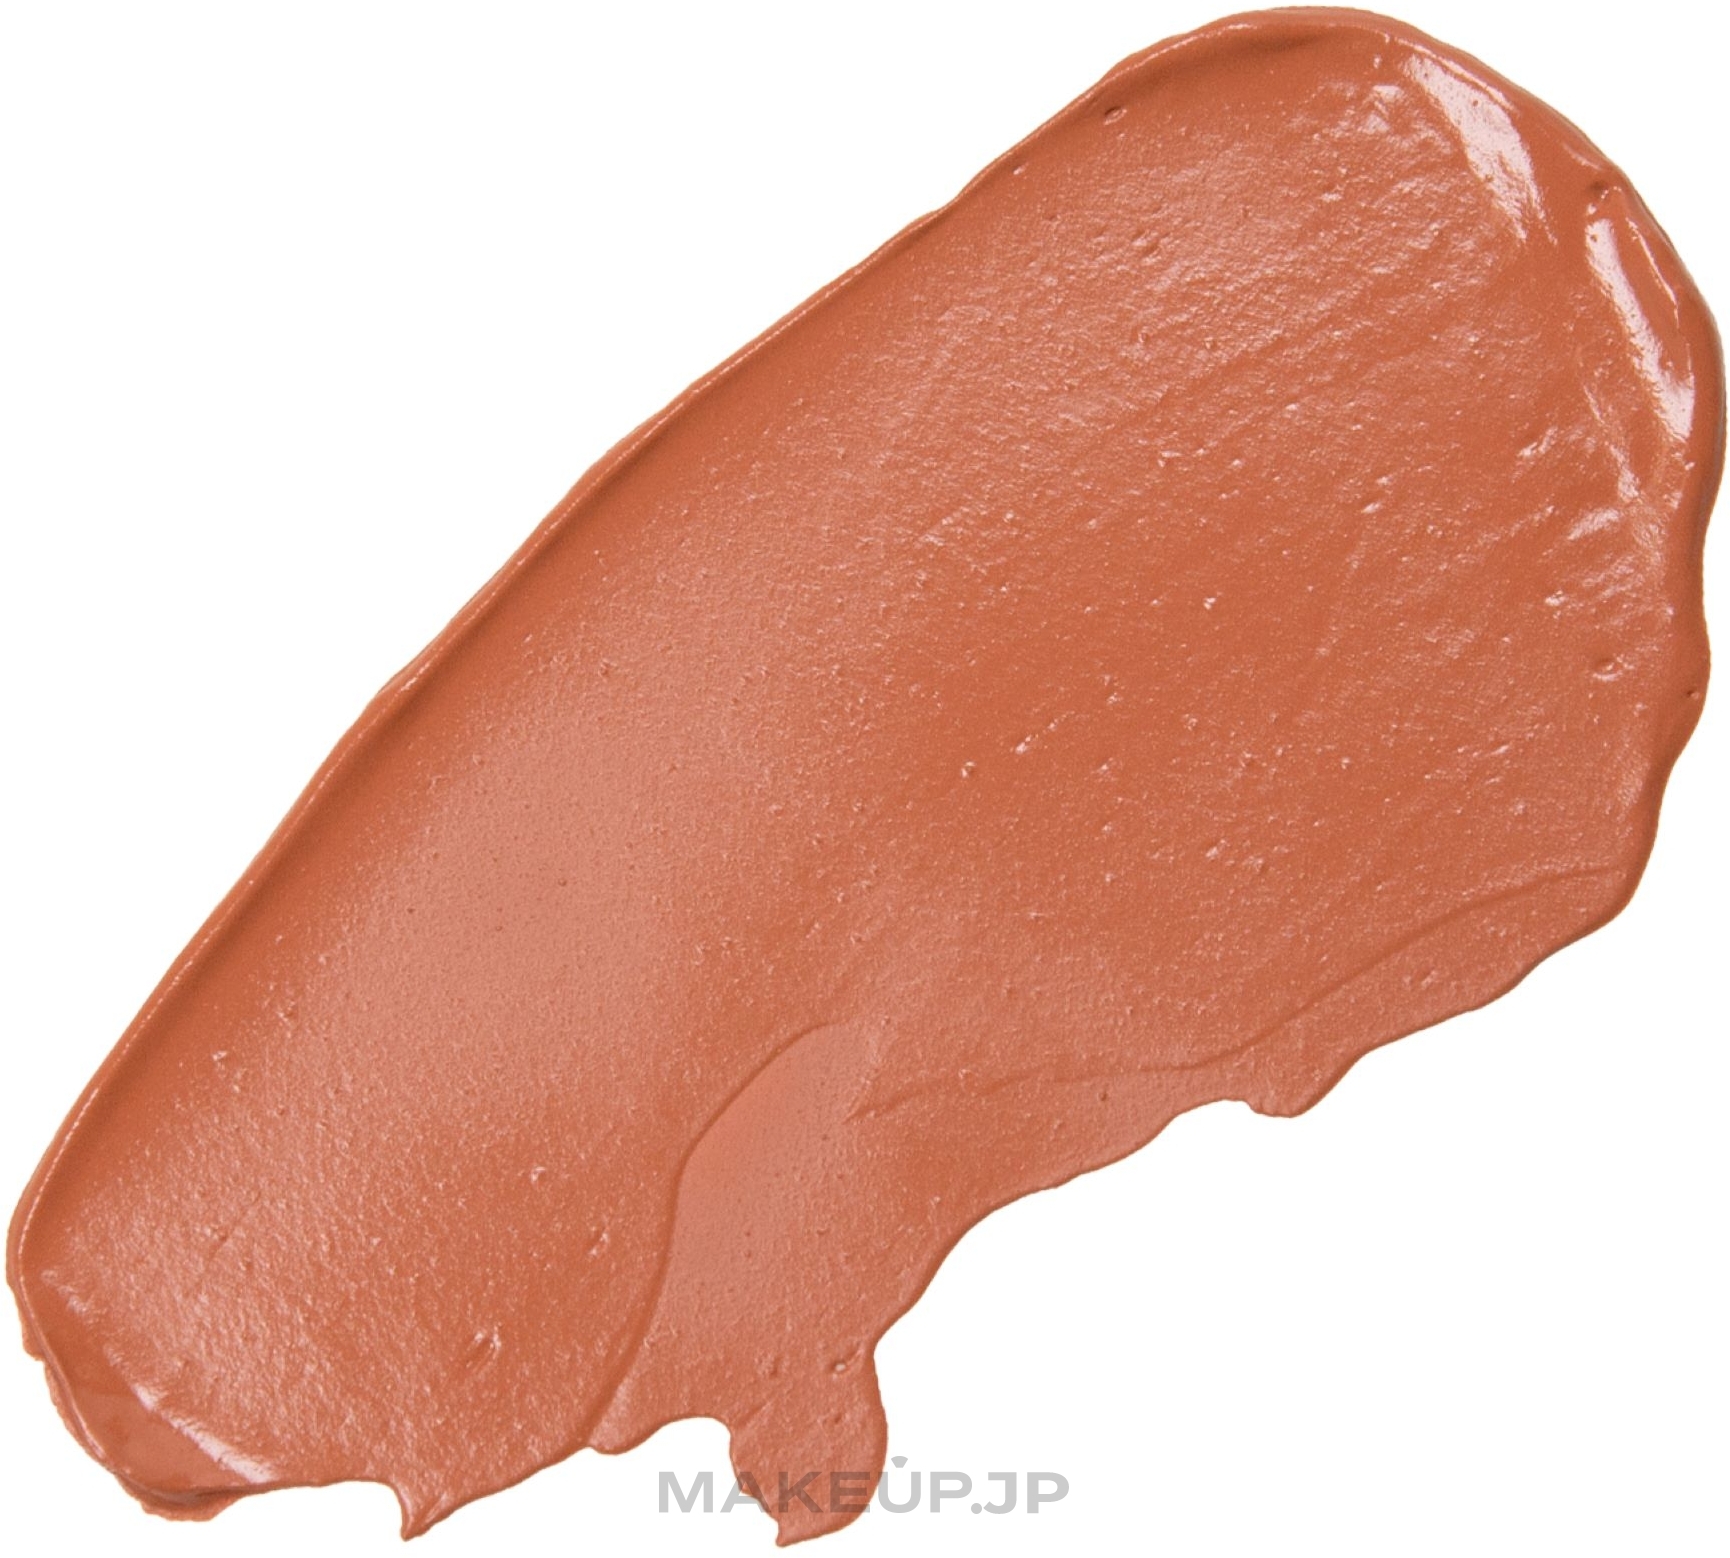 Cream Lipstick - Palladio Cream Lip Color Long Wear Liquid Lipstick — photo Bare